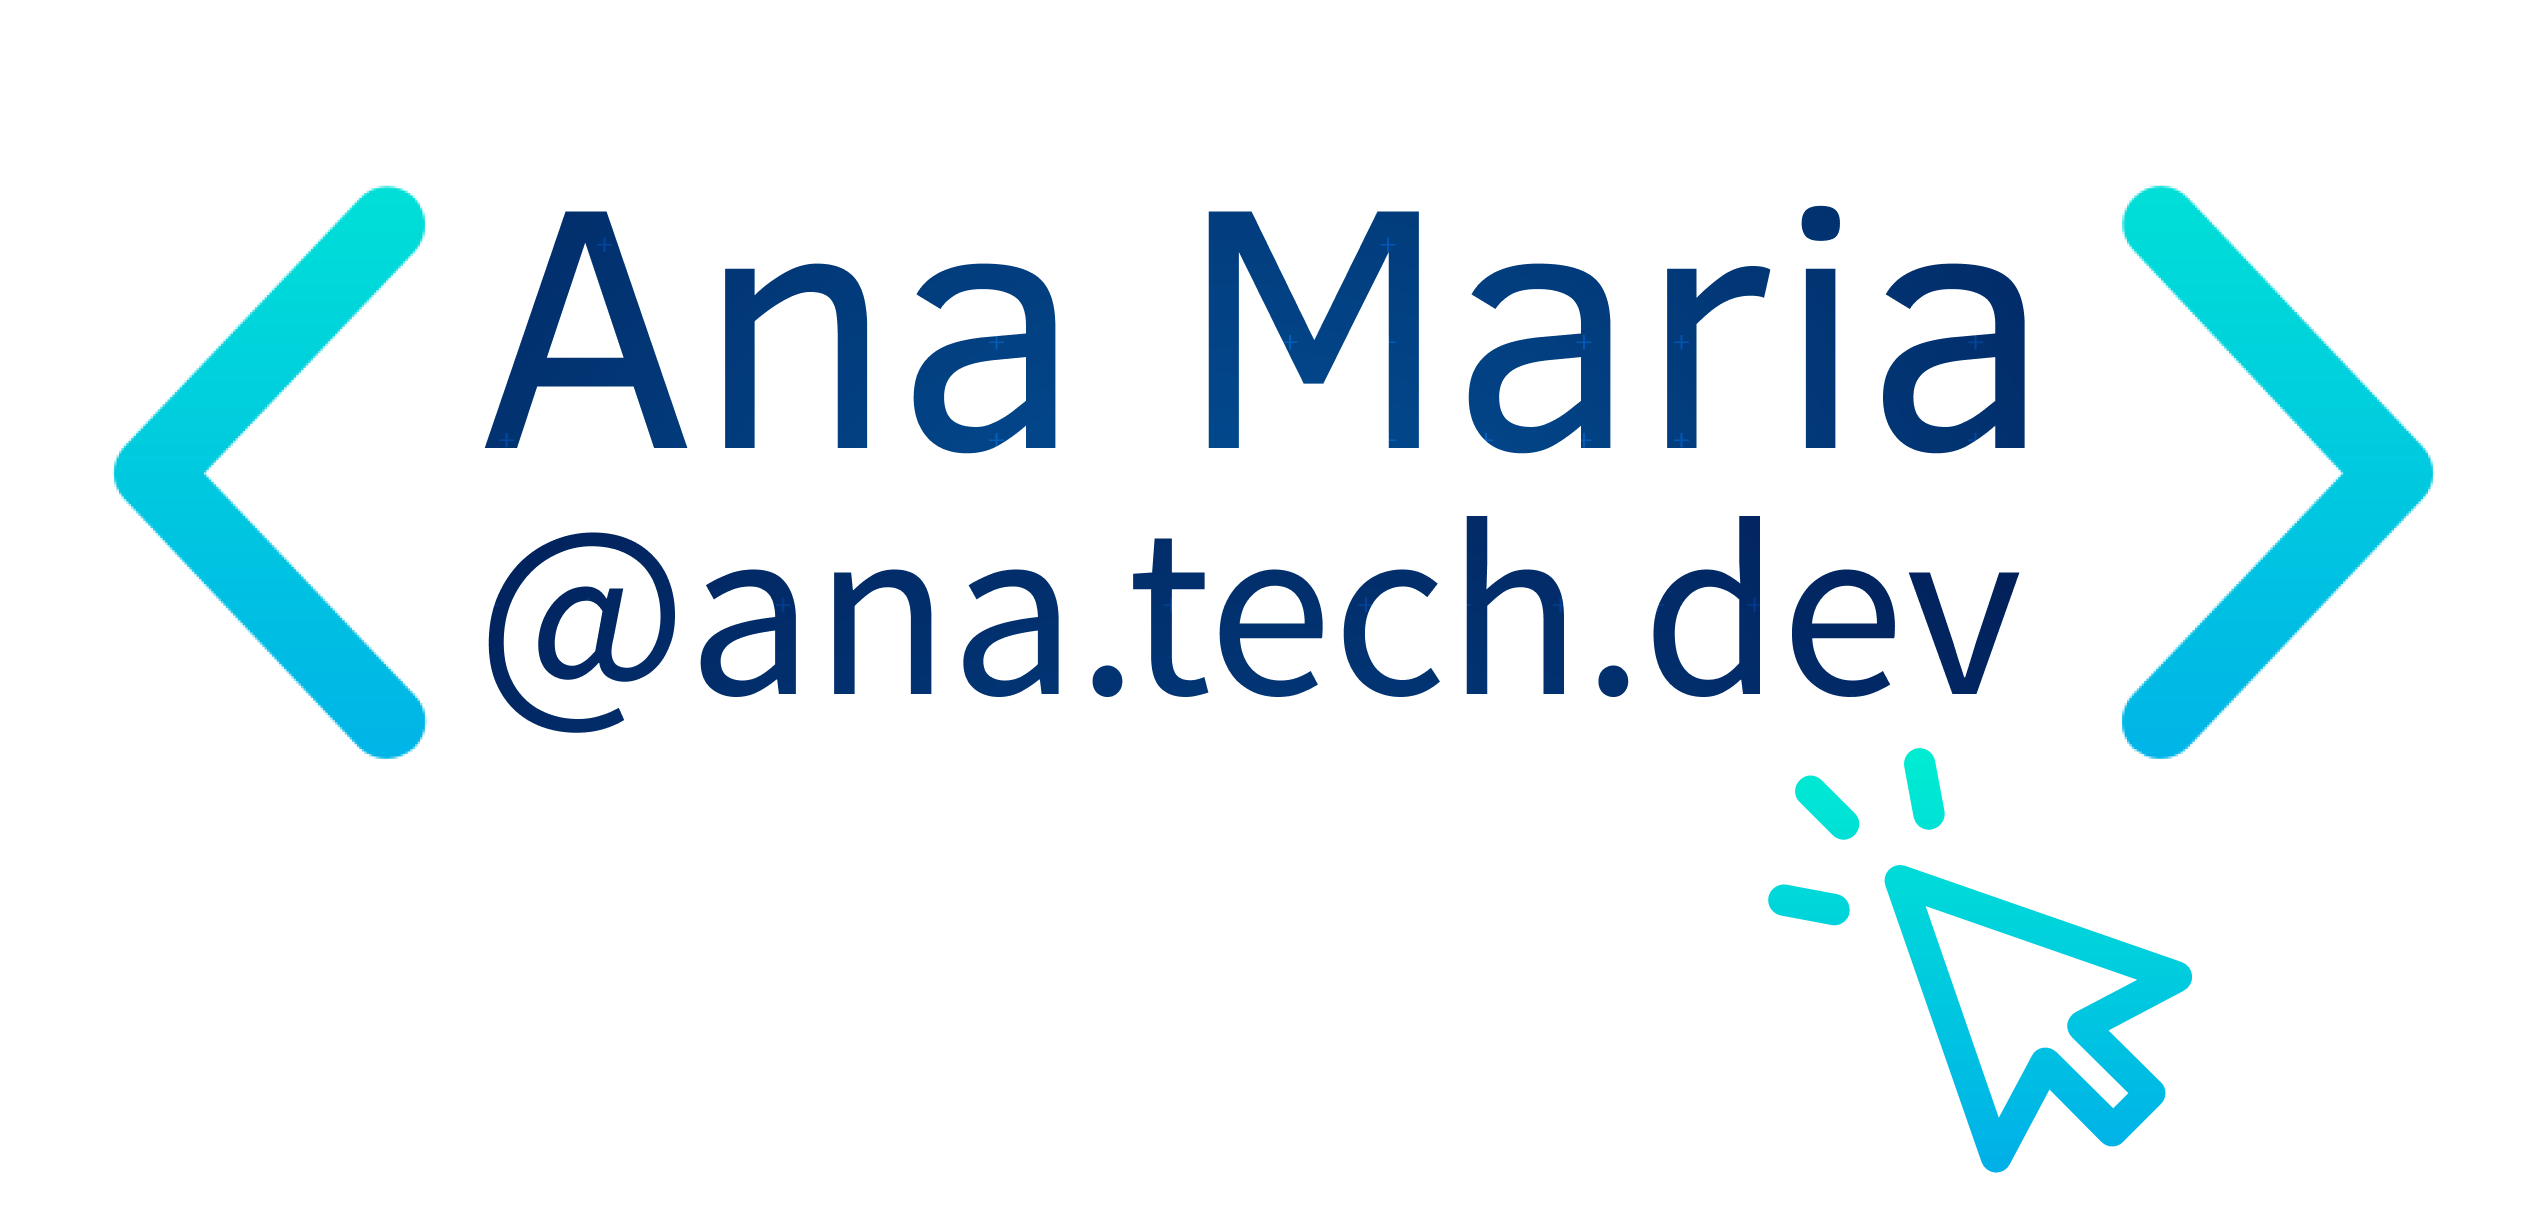 Logomarca na cor branca que representa Ana Maria @ana.tech.dev